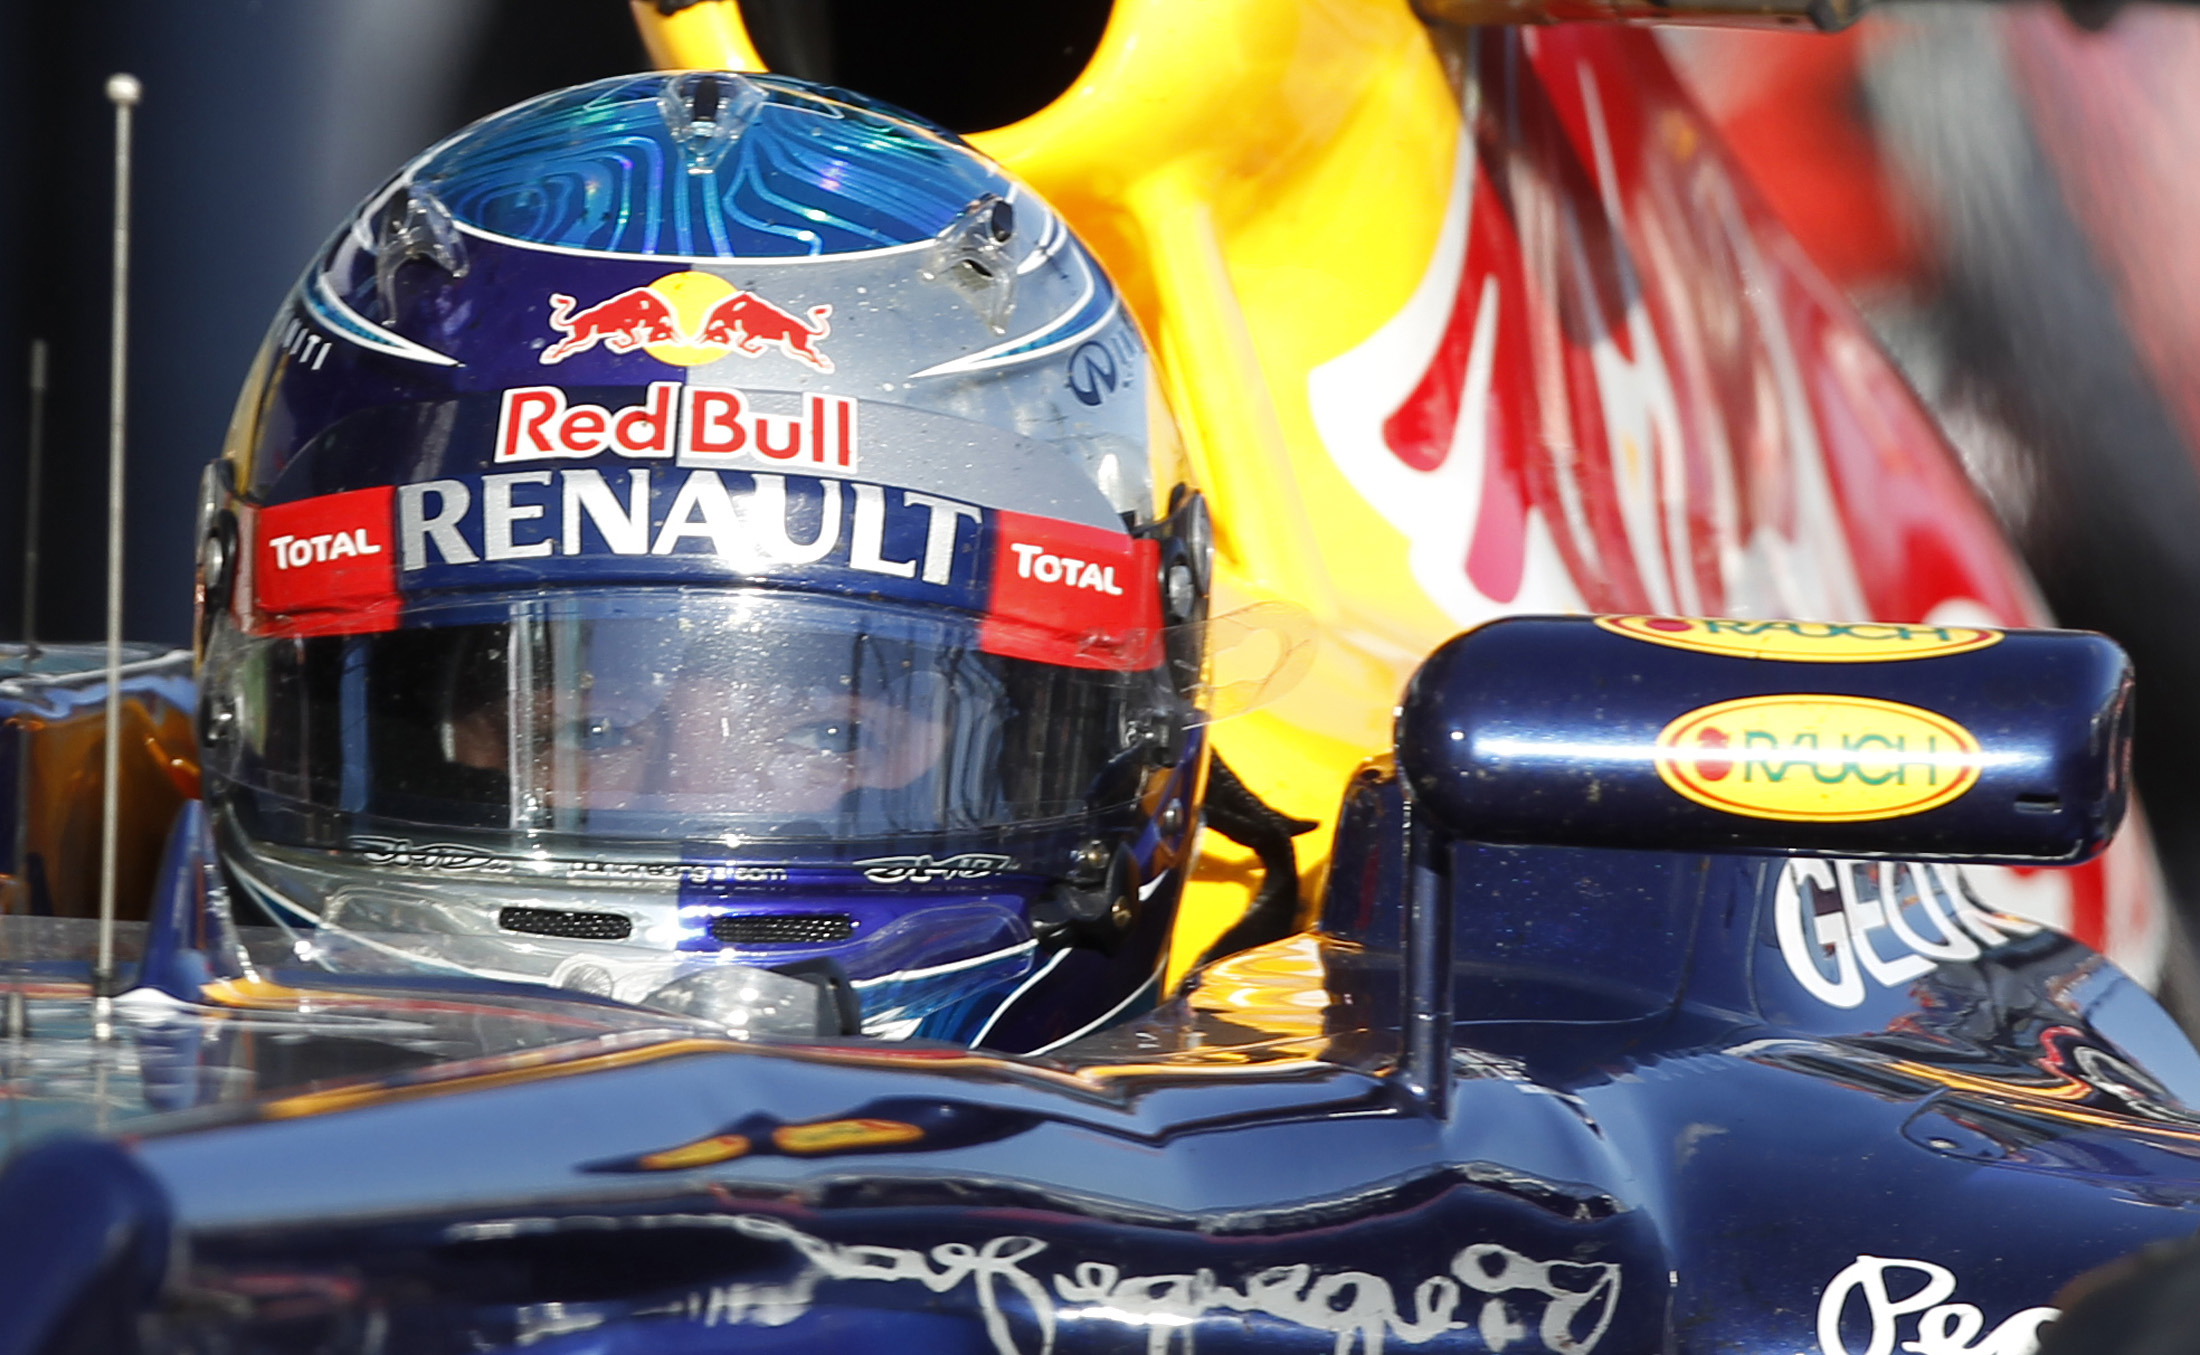 Fjolårets totalsegrare Sebastian Vettel var fokuserad inför loppet, men blev snuvad på segern.